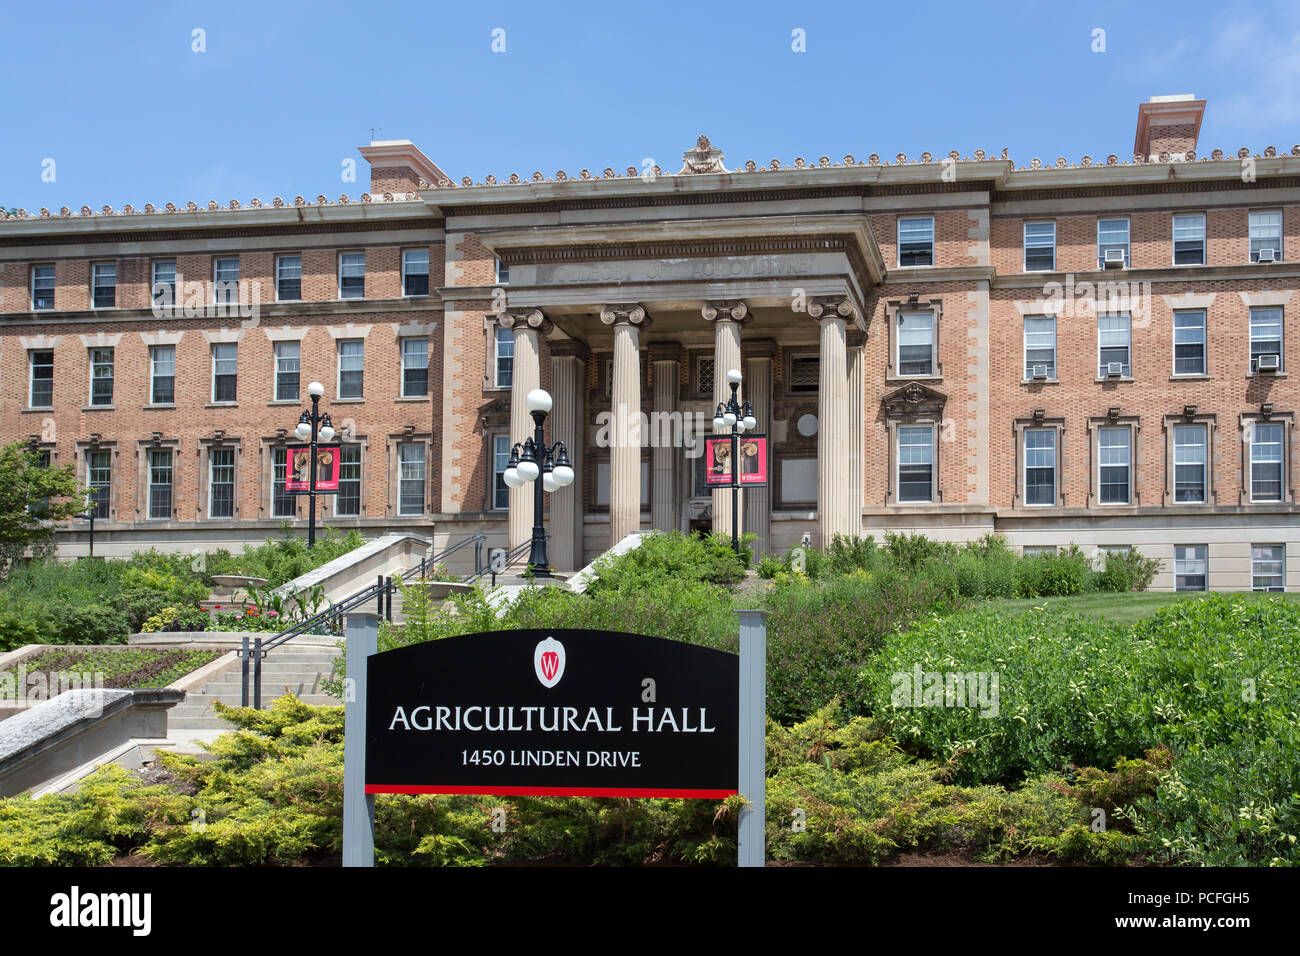 MADISON, WI/USA - 26. JUNI 2014: landwirtschaftliche Halle auf dem Campus der Universität von Wisconsin-Madison. Stockfoto